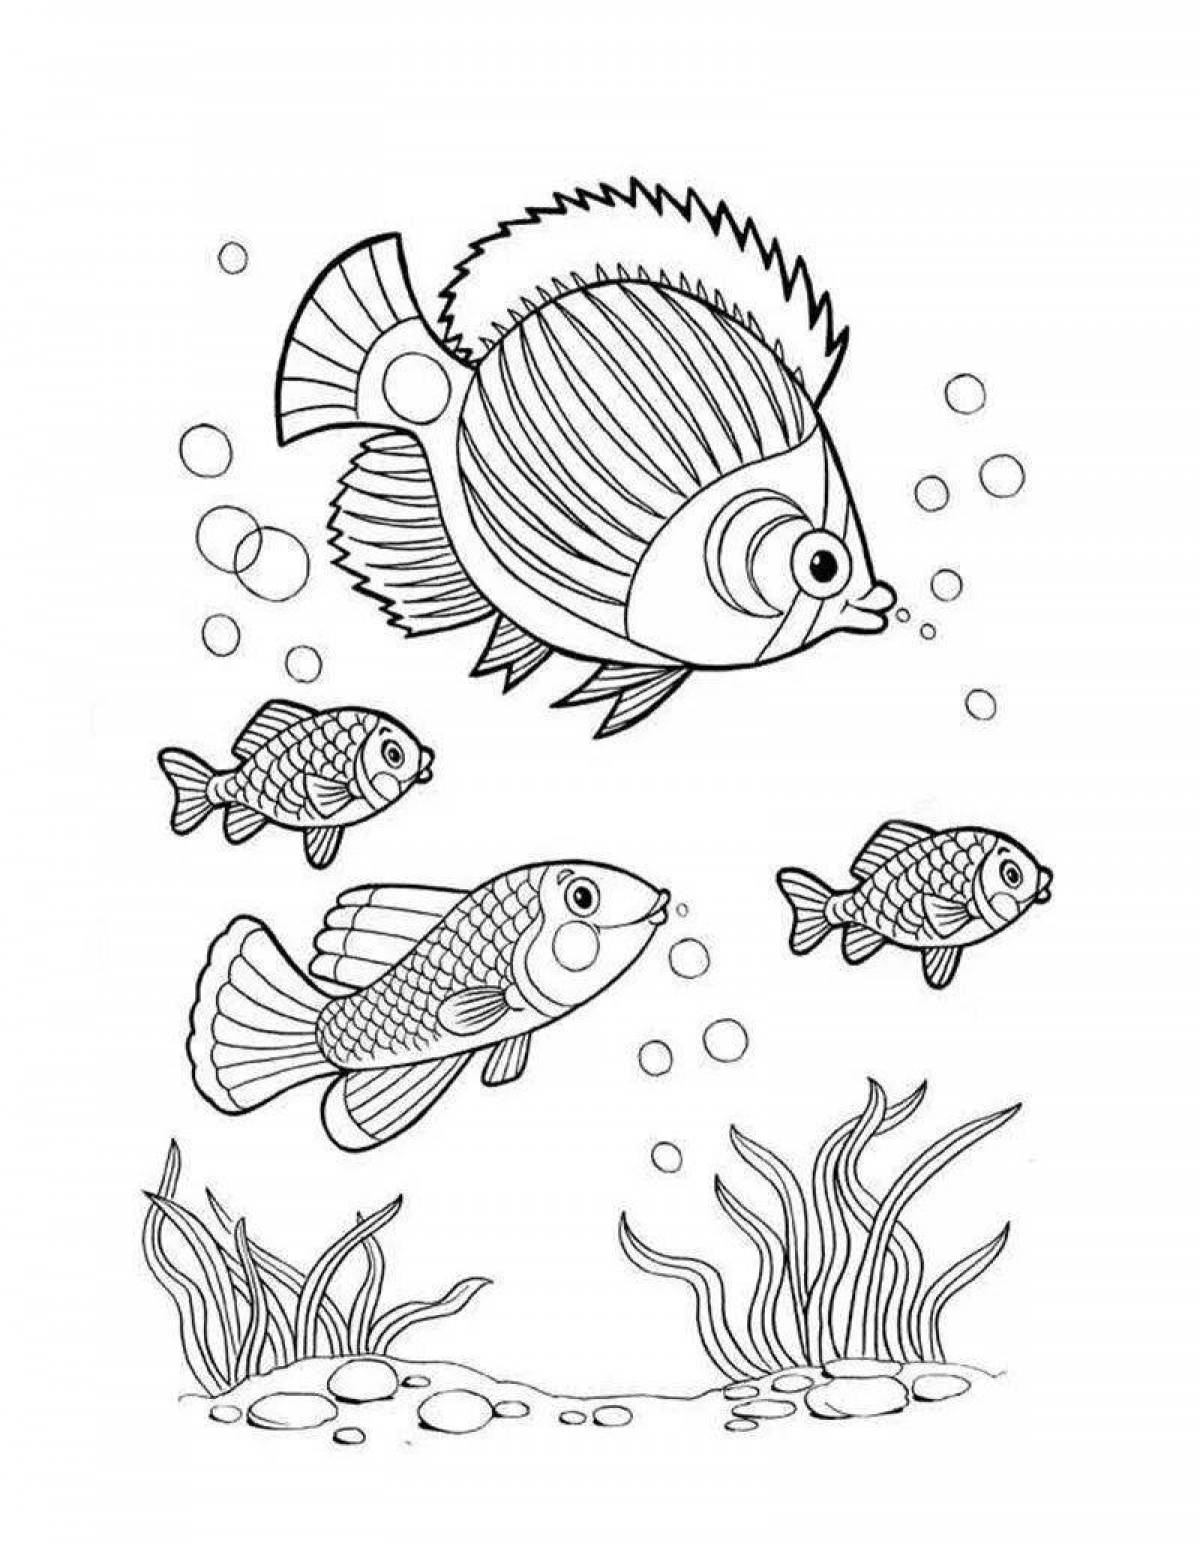 Glowing aquarium fish coloring book for kids